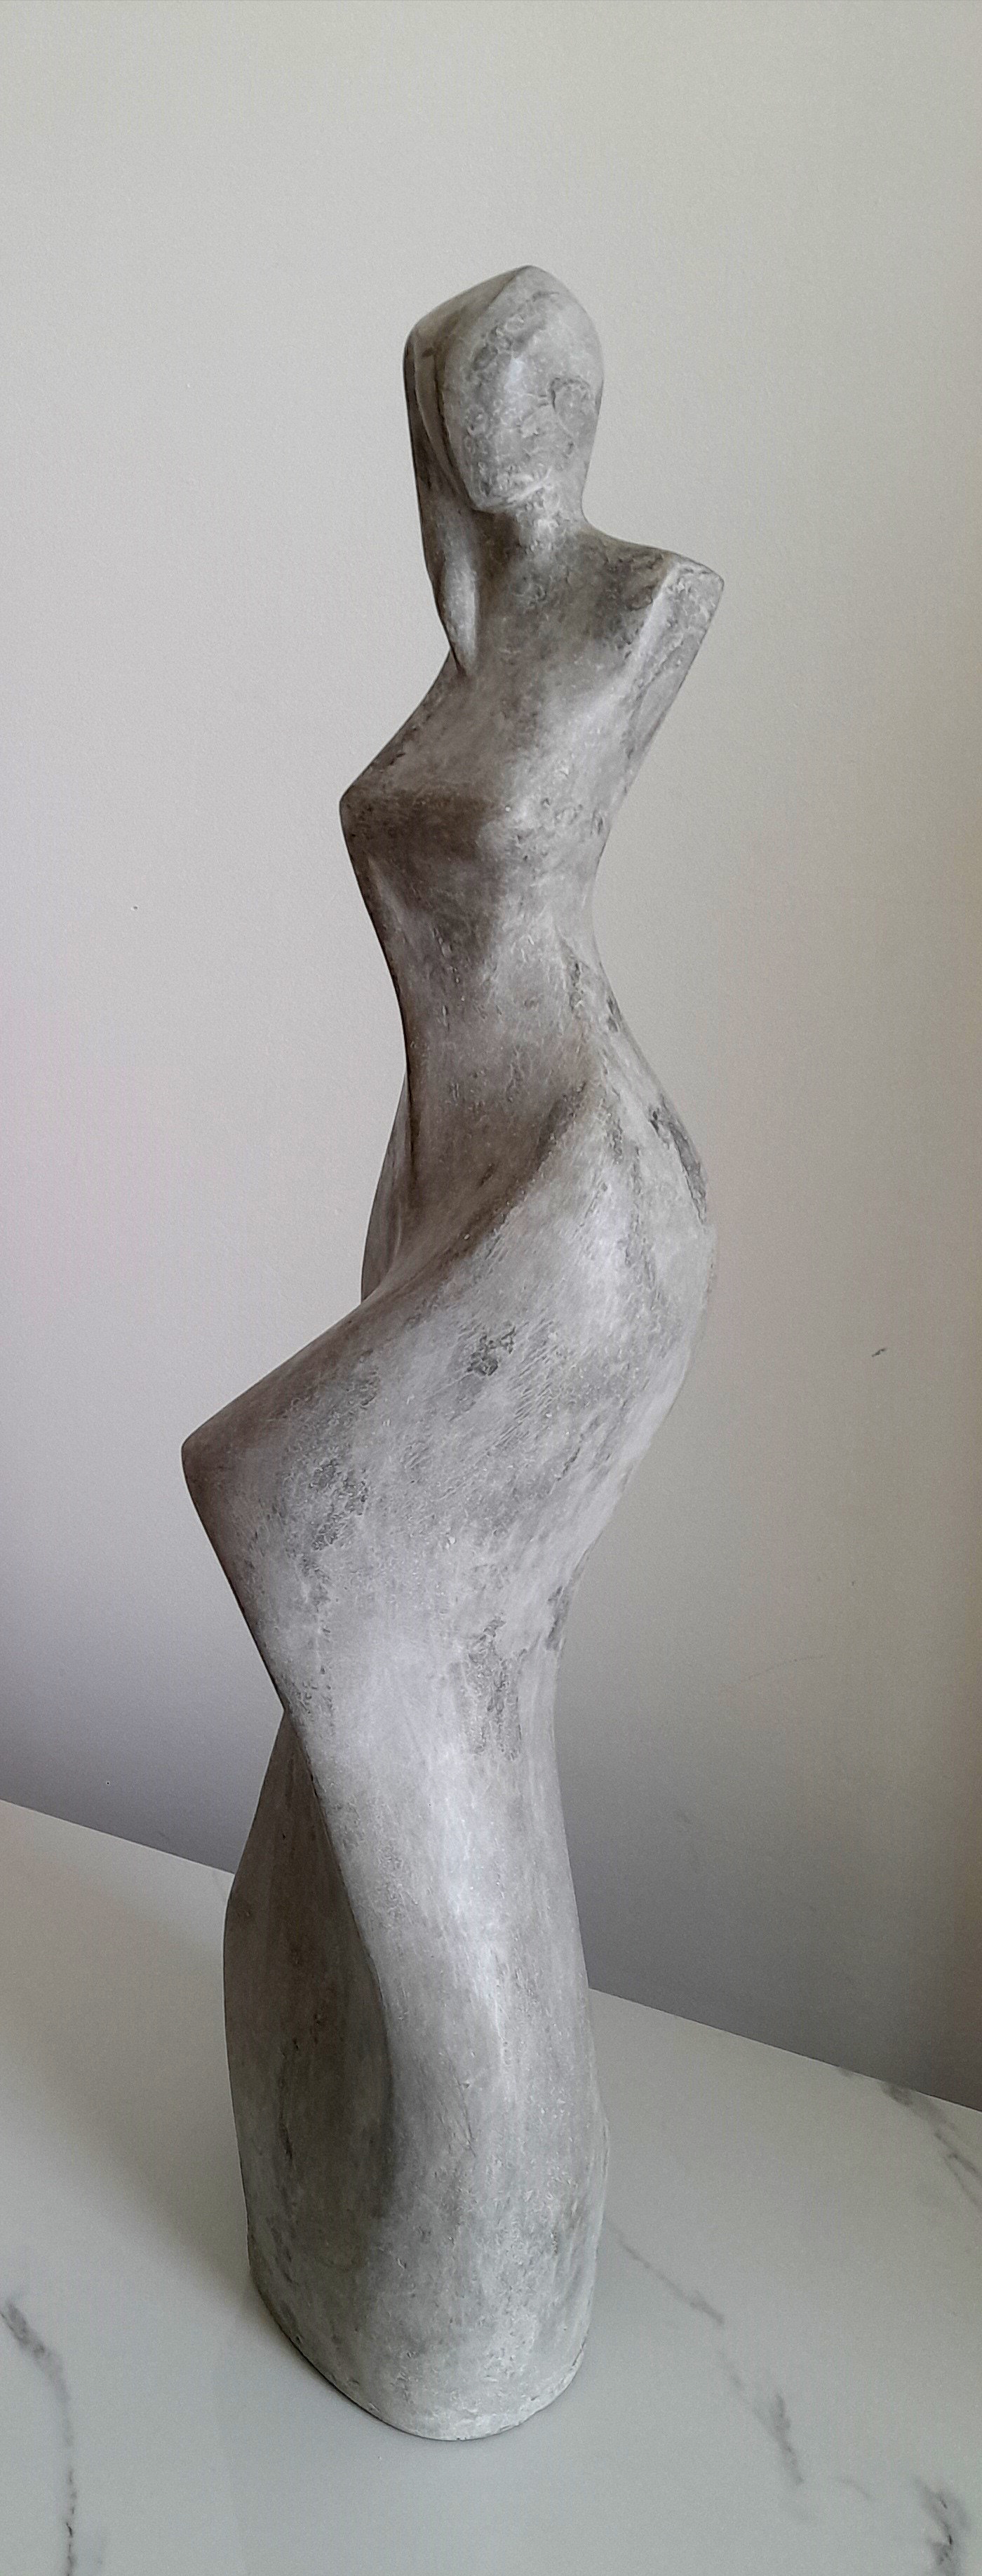 abstract concrete figurative sculpture clark camilleri female escultura modern cubism cubist